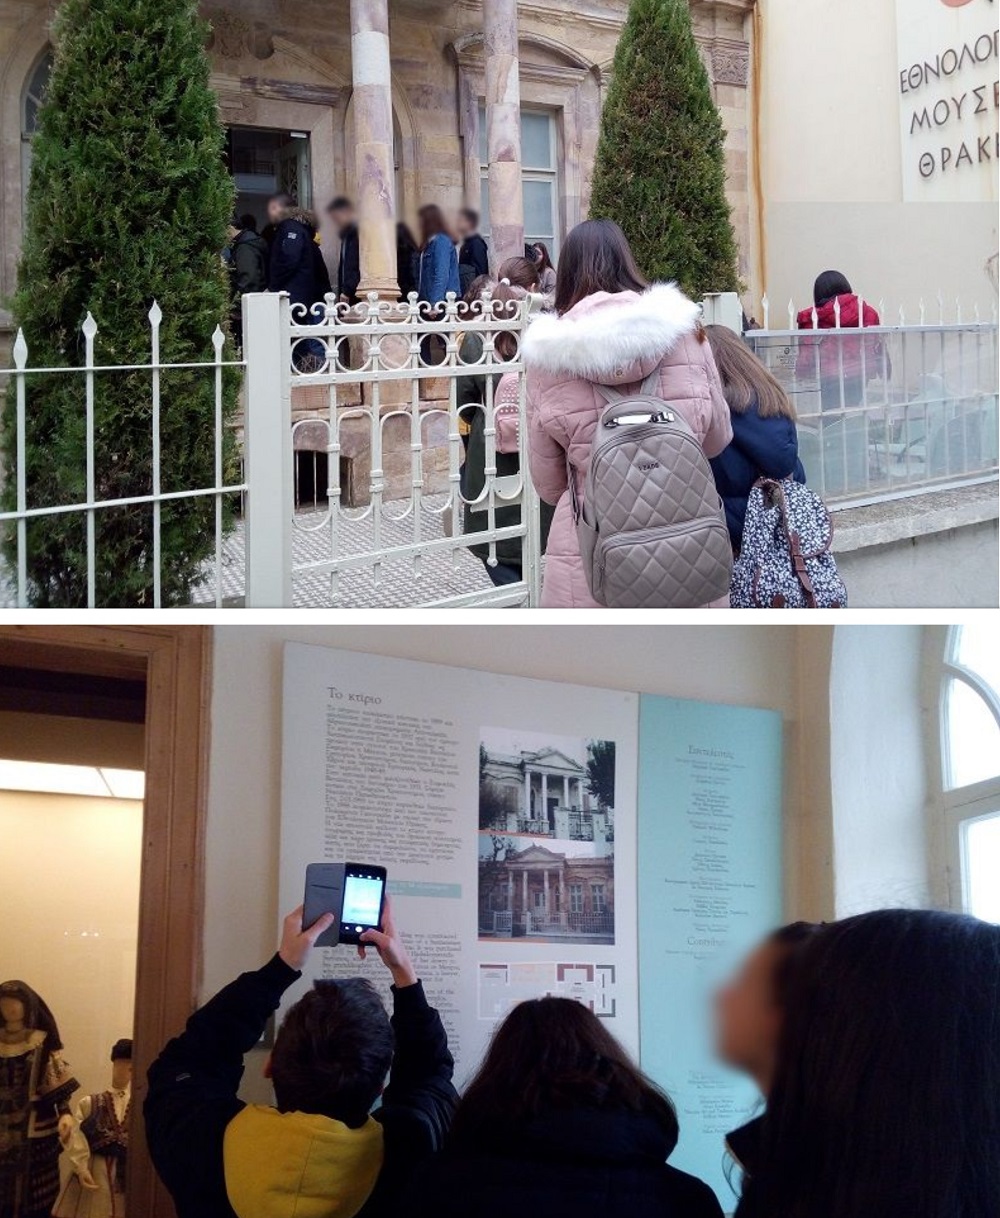 Επίσκεψη Β΄ και Γ΄ τάξης στο Εθνολογικό Μουσείο Θράκης